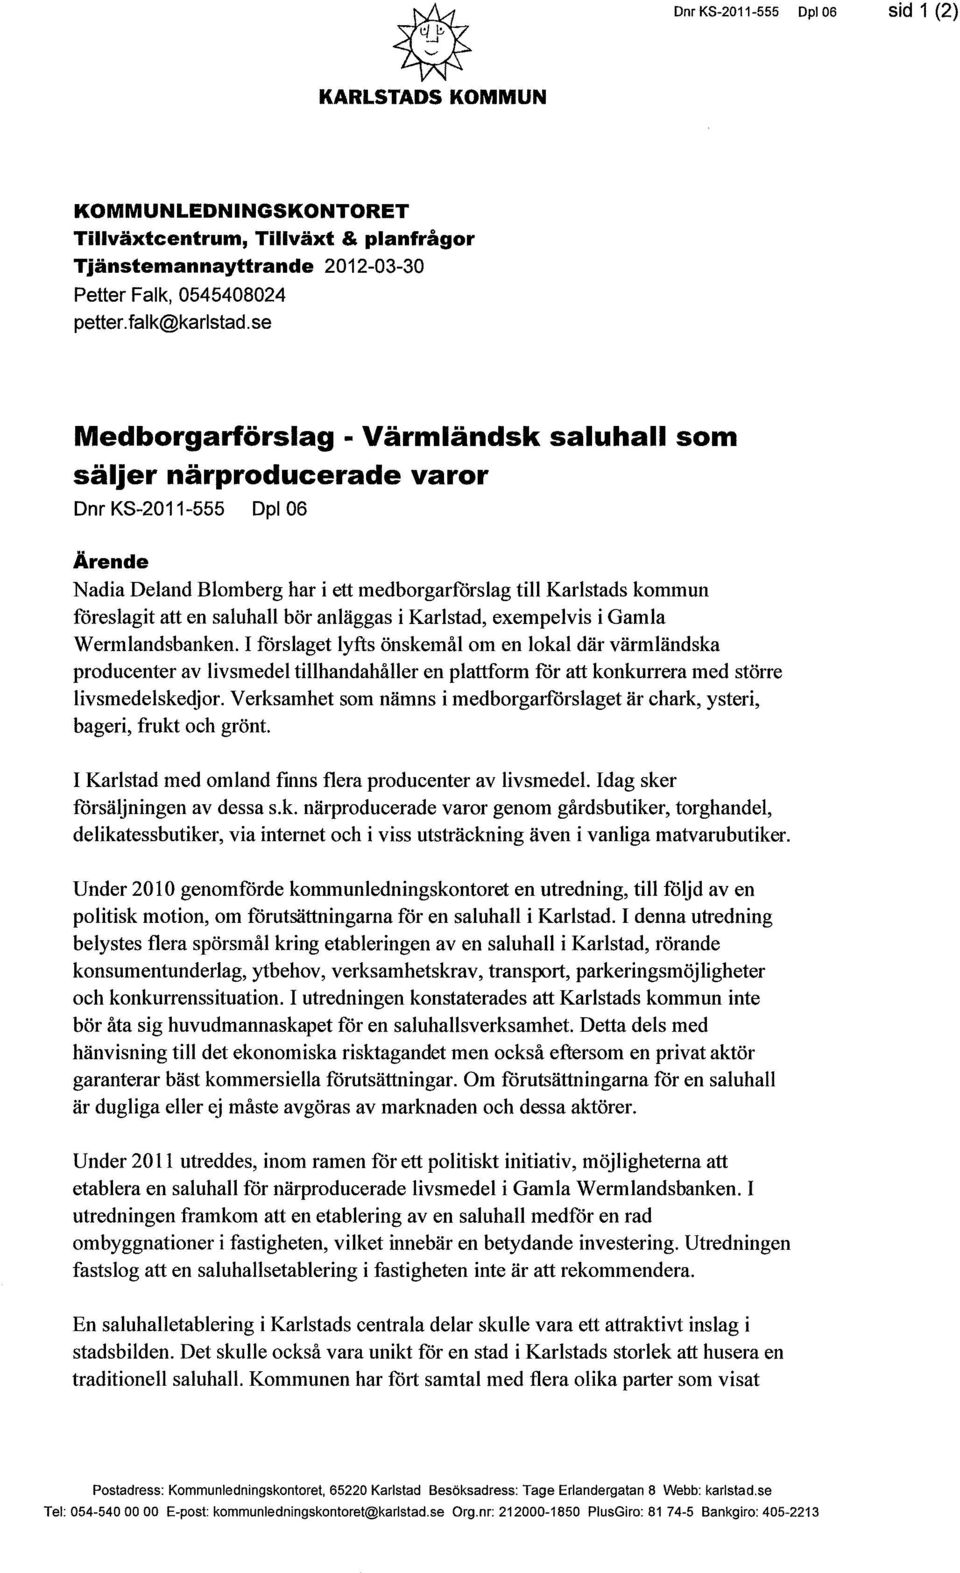 saluhall bör anläggas i Karlstad, exempelvis i Gamla Wermlandsbanken.